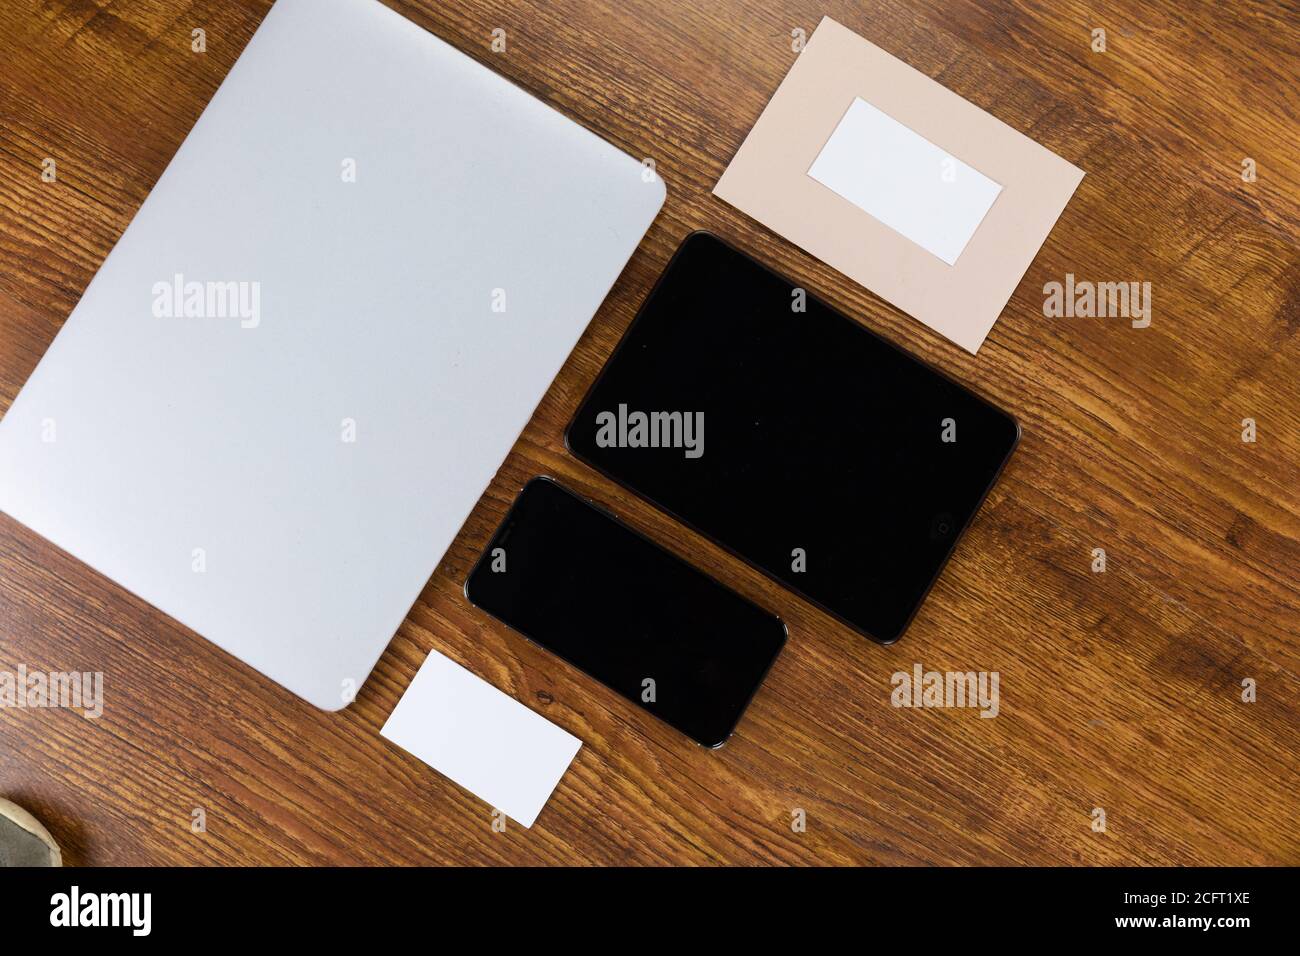 Blick auf einen Laptop mit Tablet und Smartphone, eine Kuverppe und Papier auf Holztisch Hintergrund Stockfoto